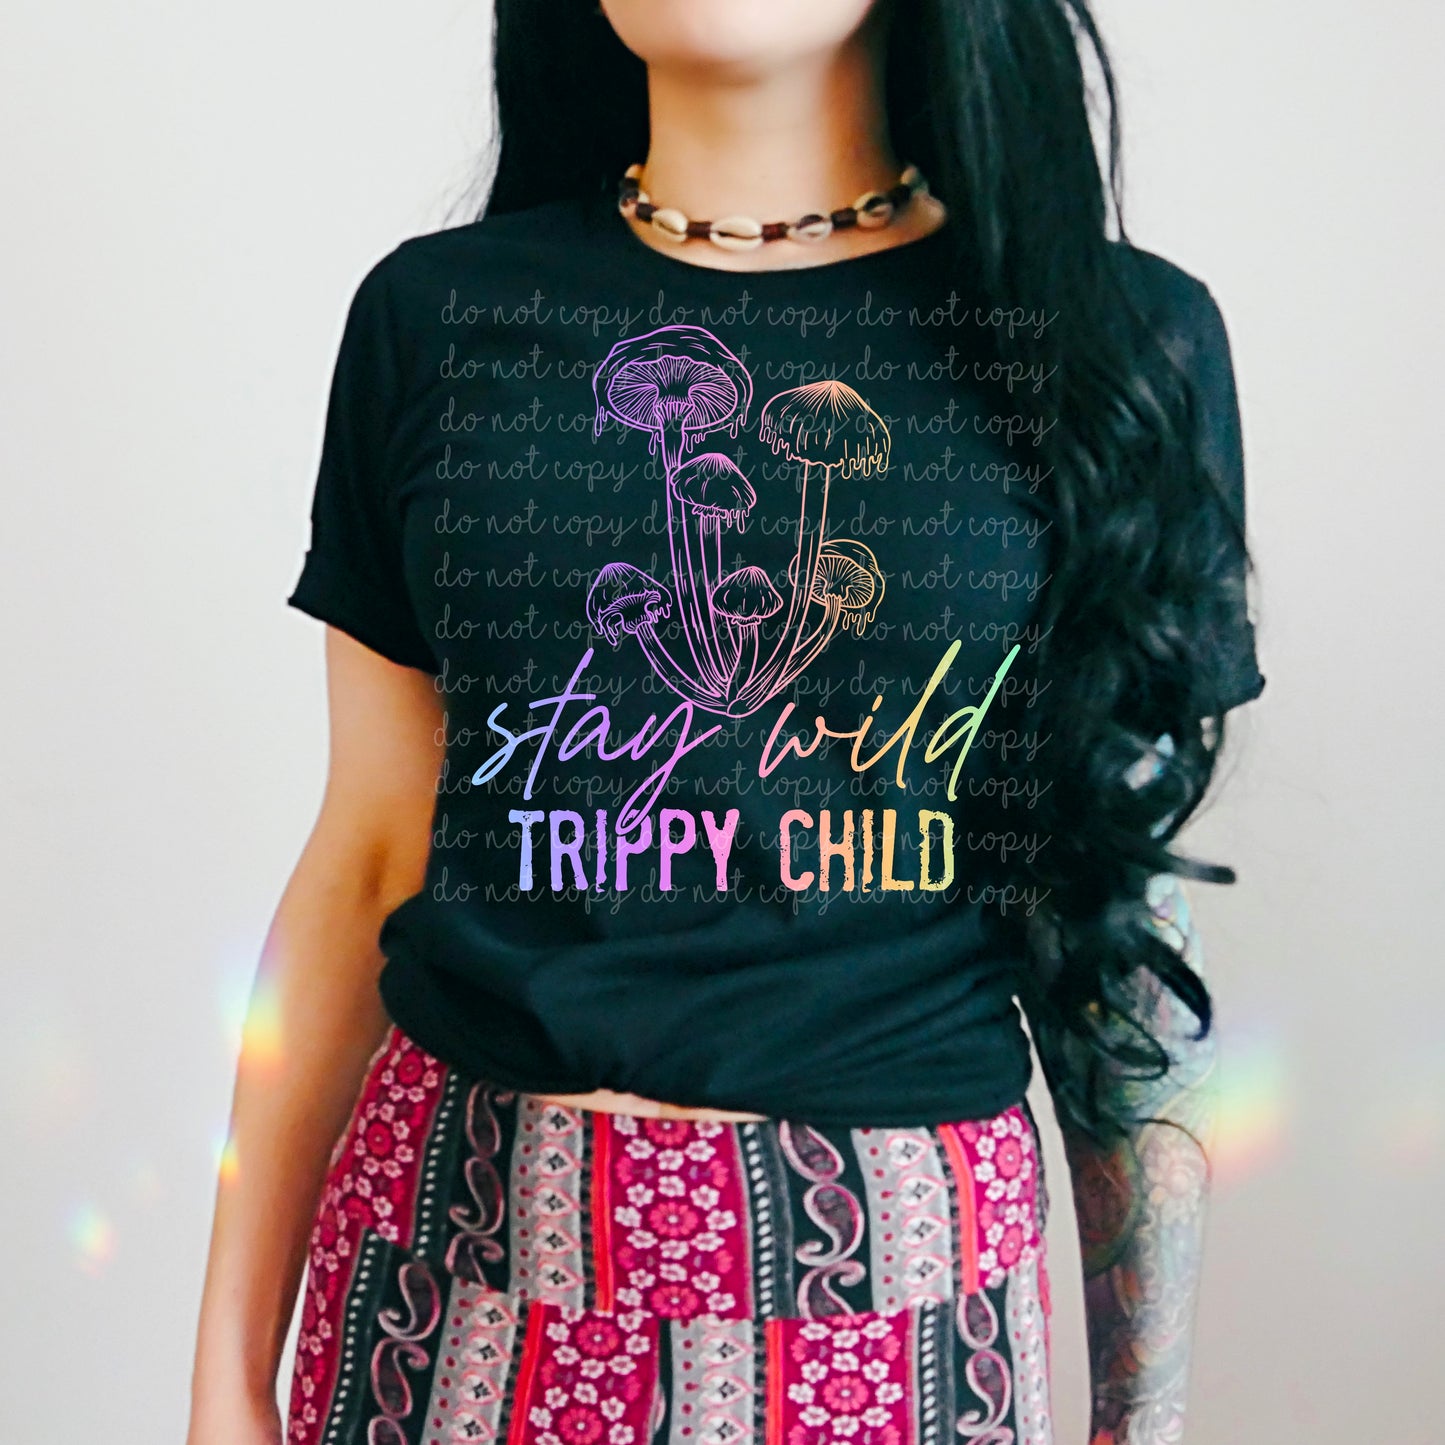 Stay wild trippy child  Cerra's Shop Creates   